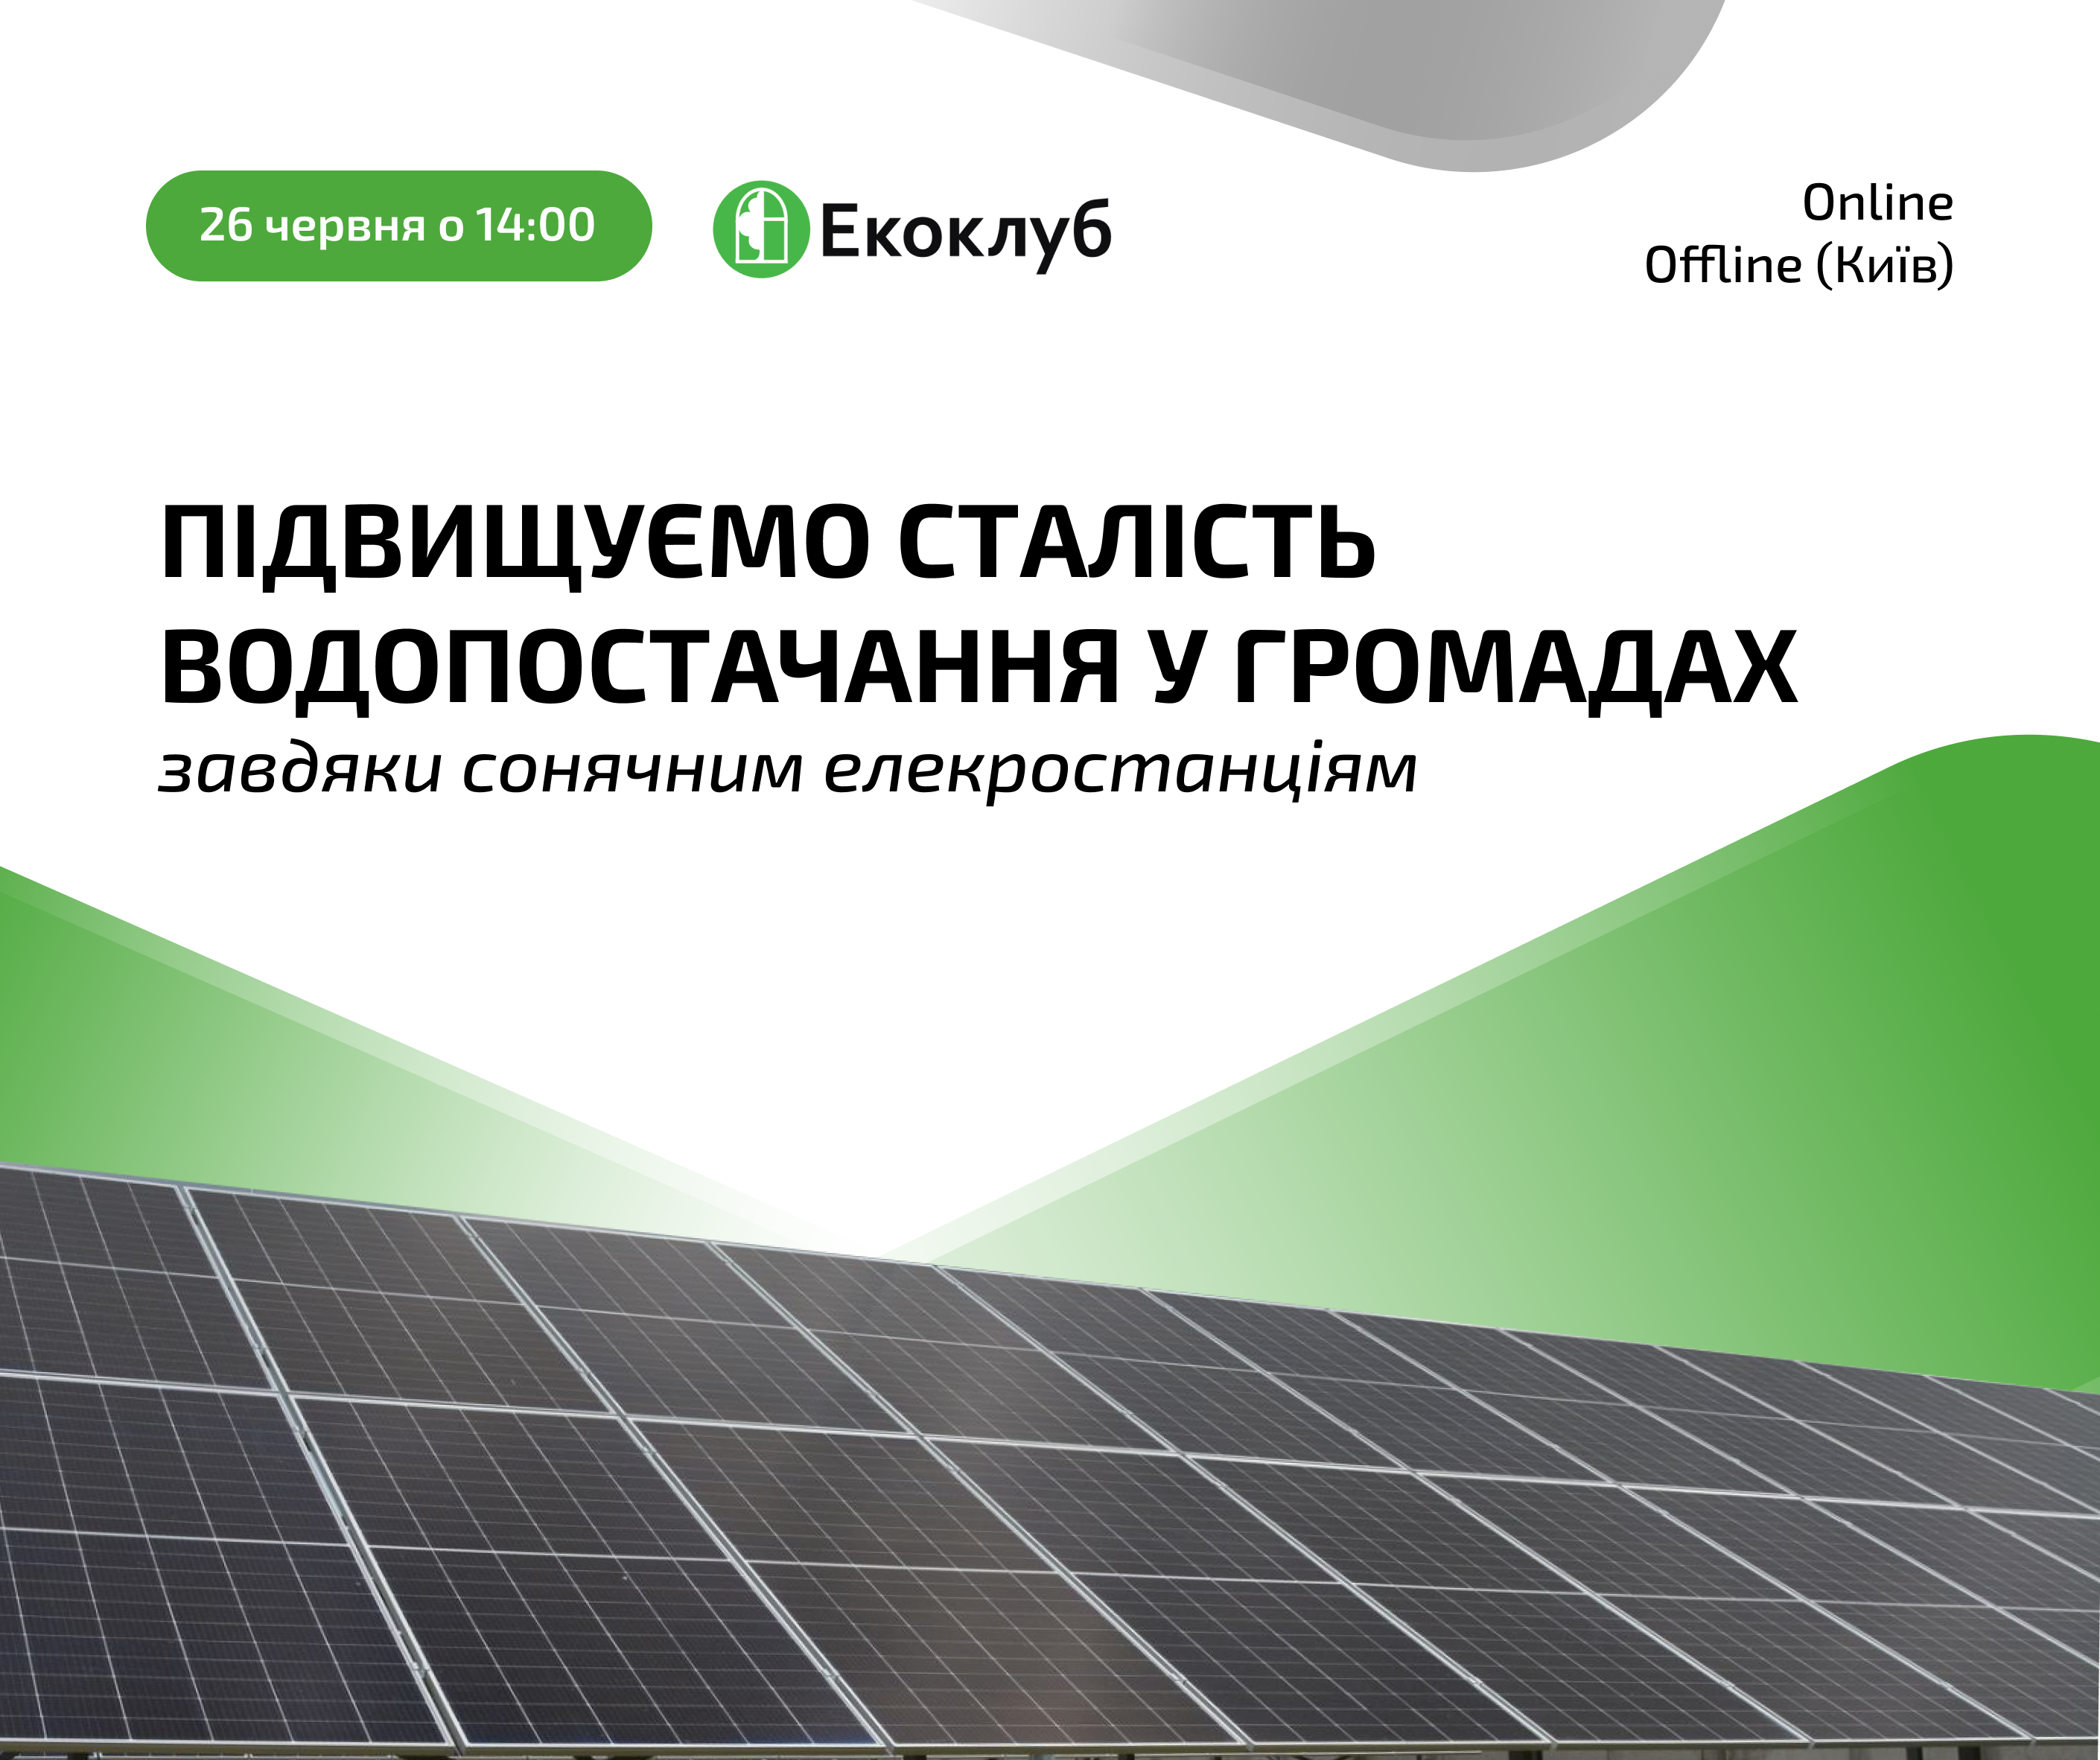 Запрошуємо на подію “Підвищуємо сталість водопостачання у громадах завдяки сонячним елекростанціям”